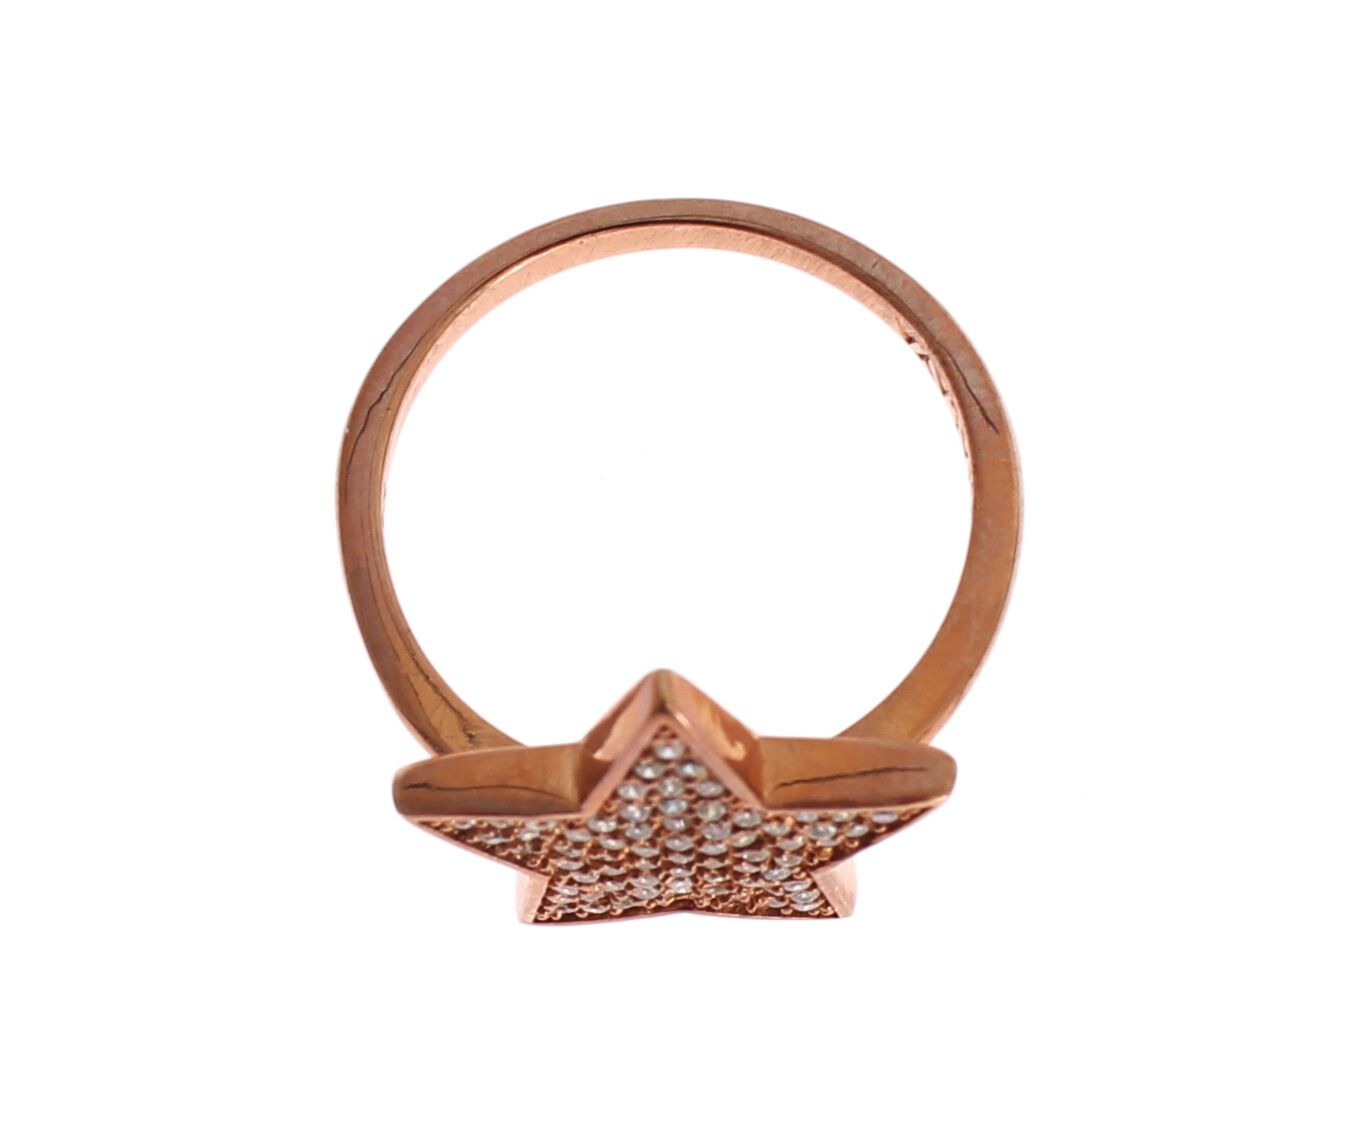 Дамски прозрачен сребърен пръстен Nialaya със звезда 925